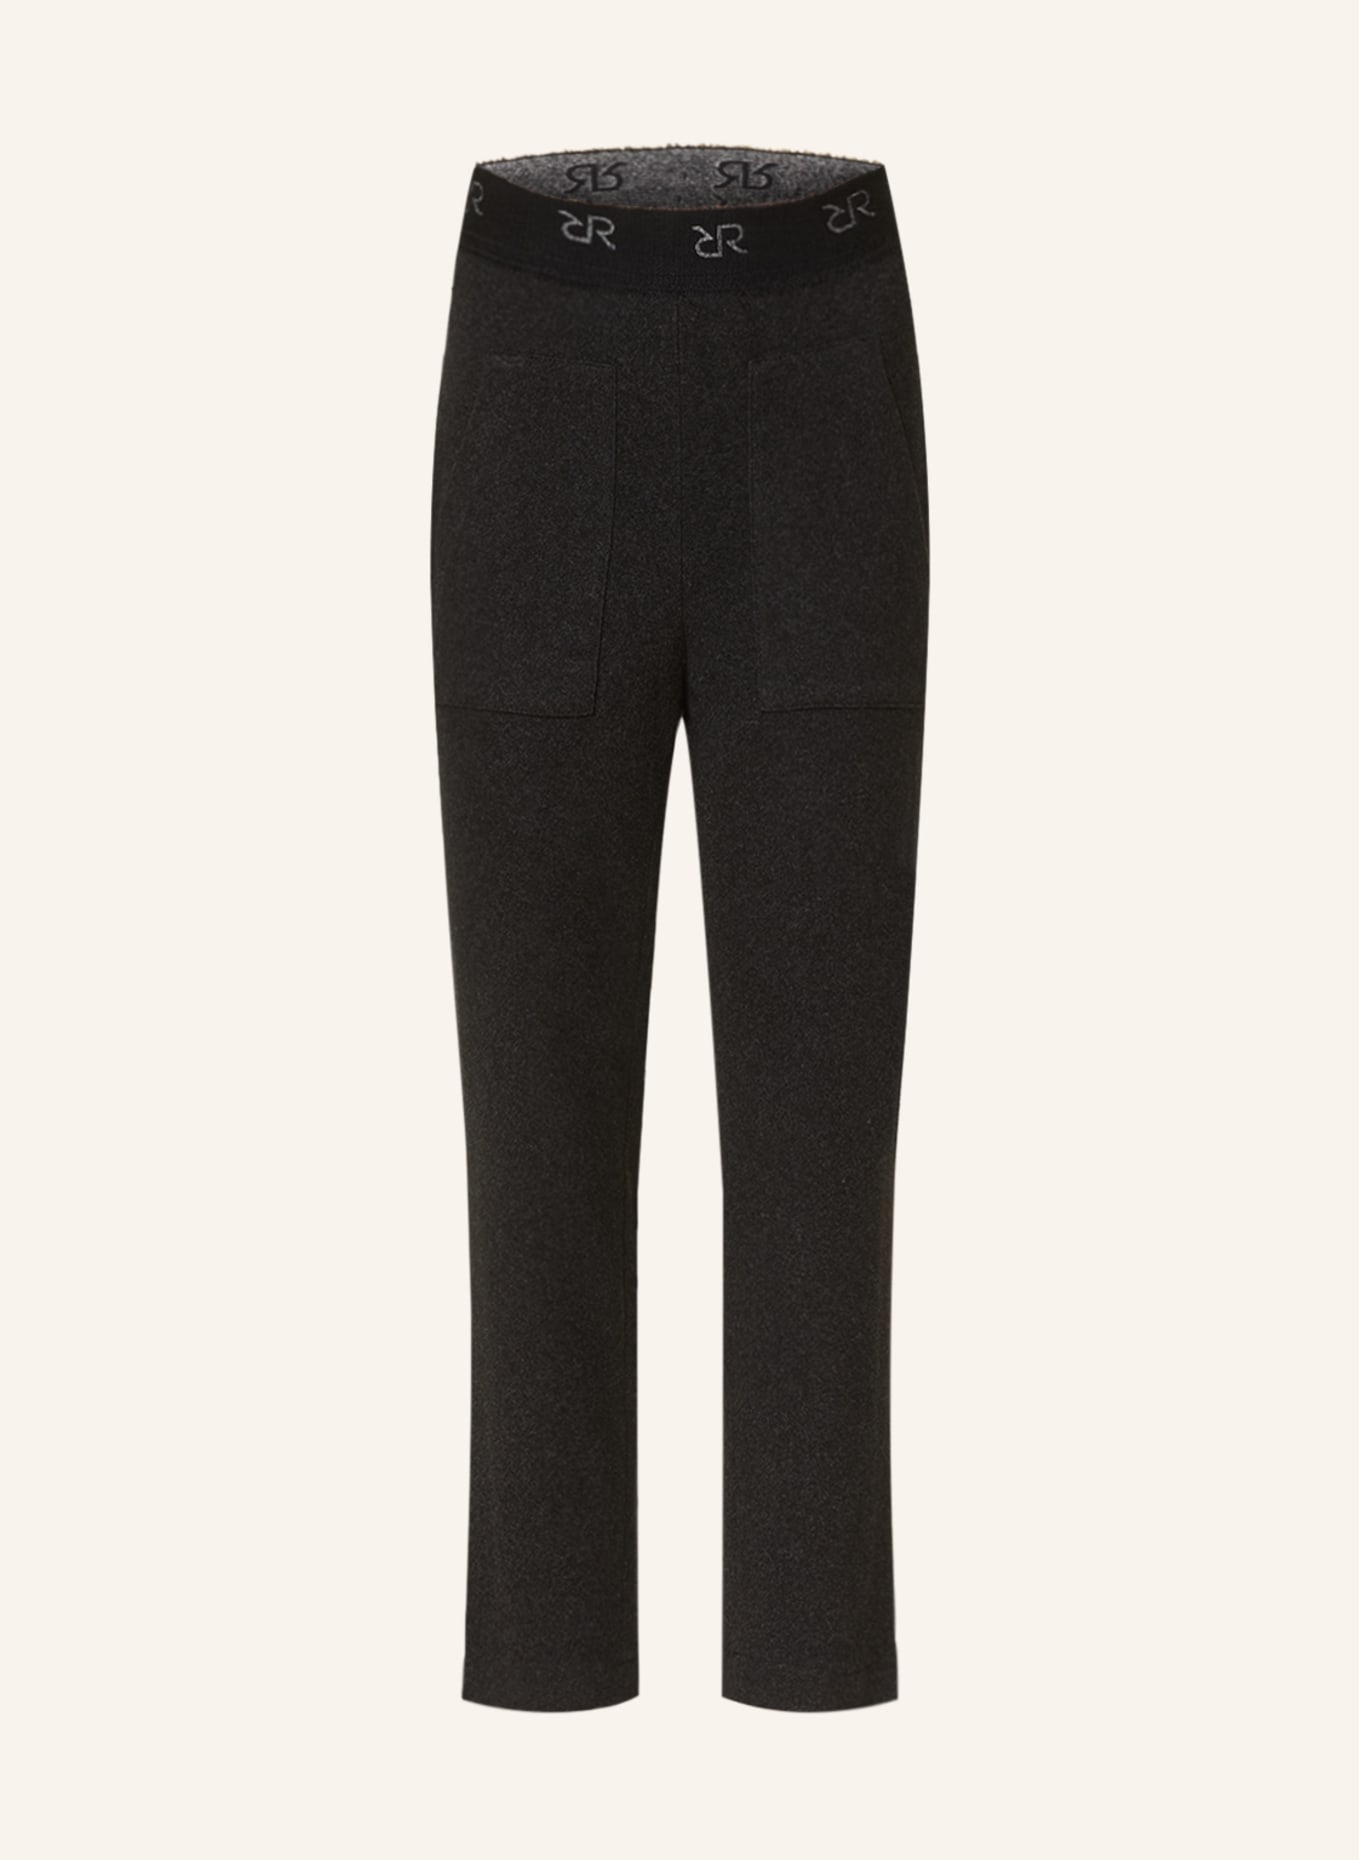 RAFFAELLO ROSSI 7/8 trousers IRA, Color: DARK GRAY (Image 1)